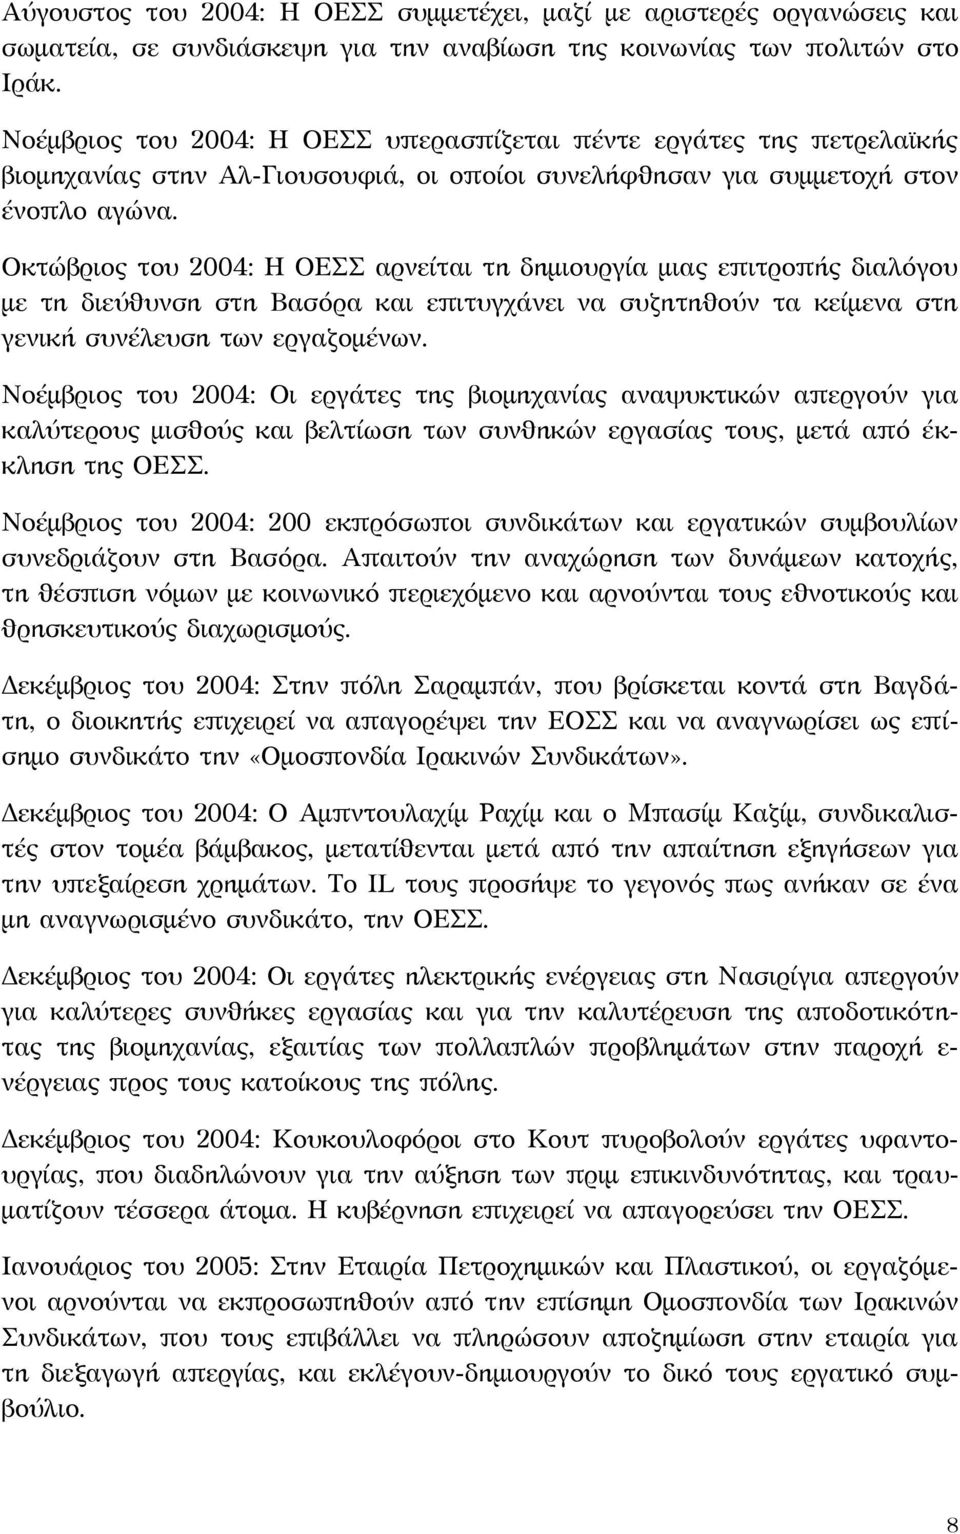 Οκτώβριος του 2004: Η ΟΕΣΣ αρνείται τη δημιουργία μιας επιτροπής διαλόγου με τη διεύθυνση στη Βασόρα και επιτυγχάνει να συζητηθούν τα κείμενα στη γενική συνέλευση των εργαζομένων.